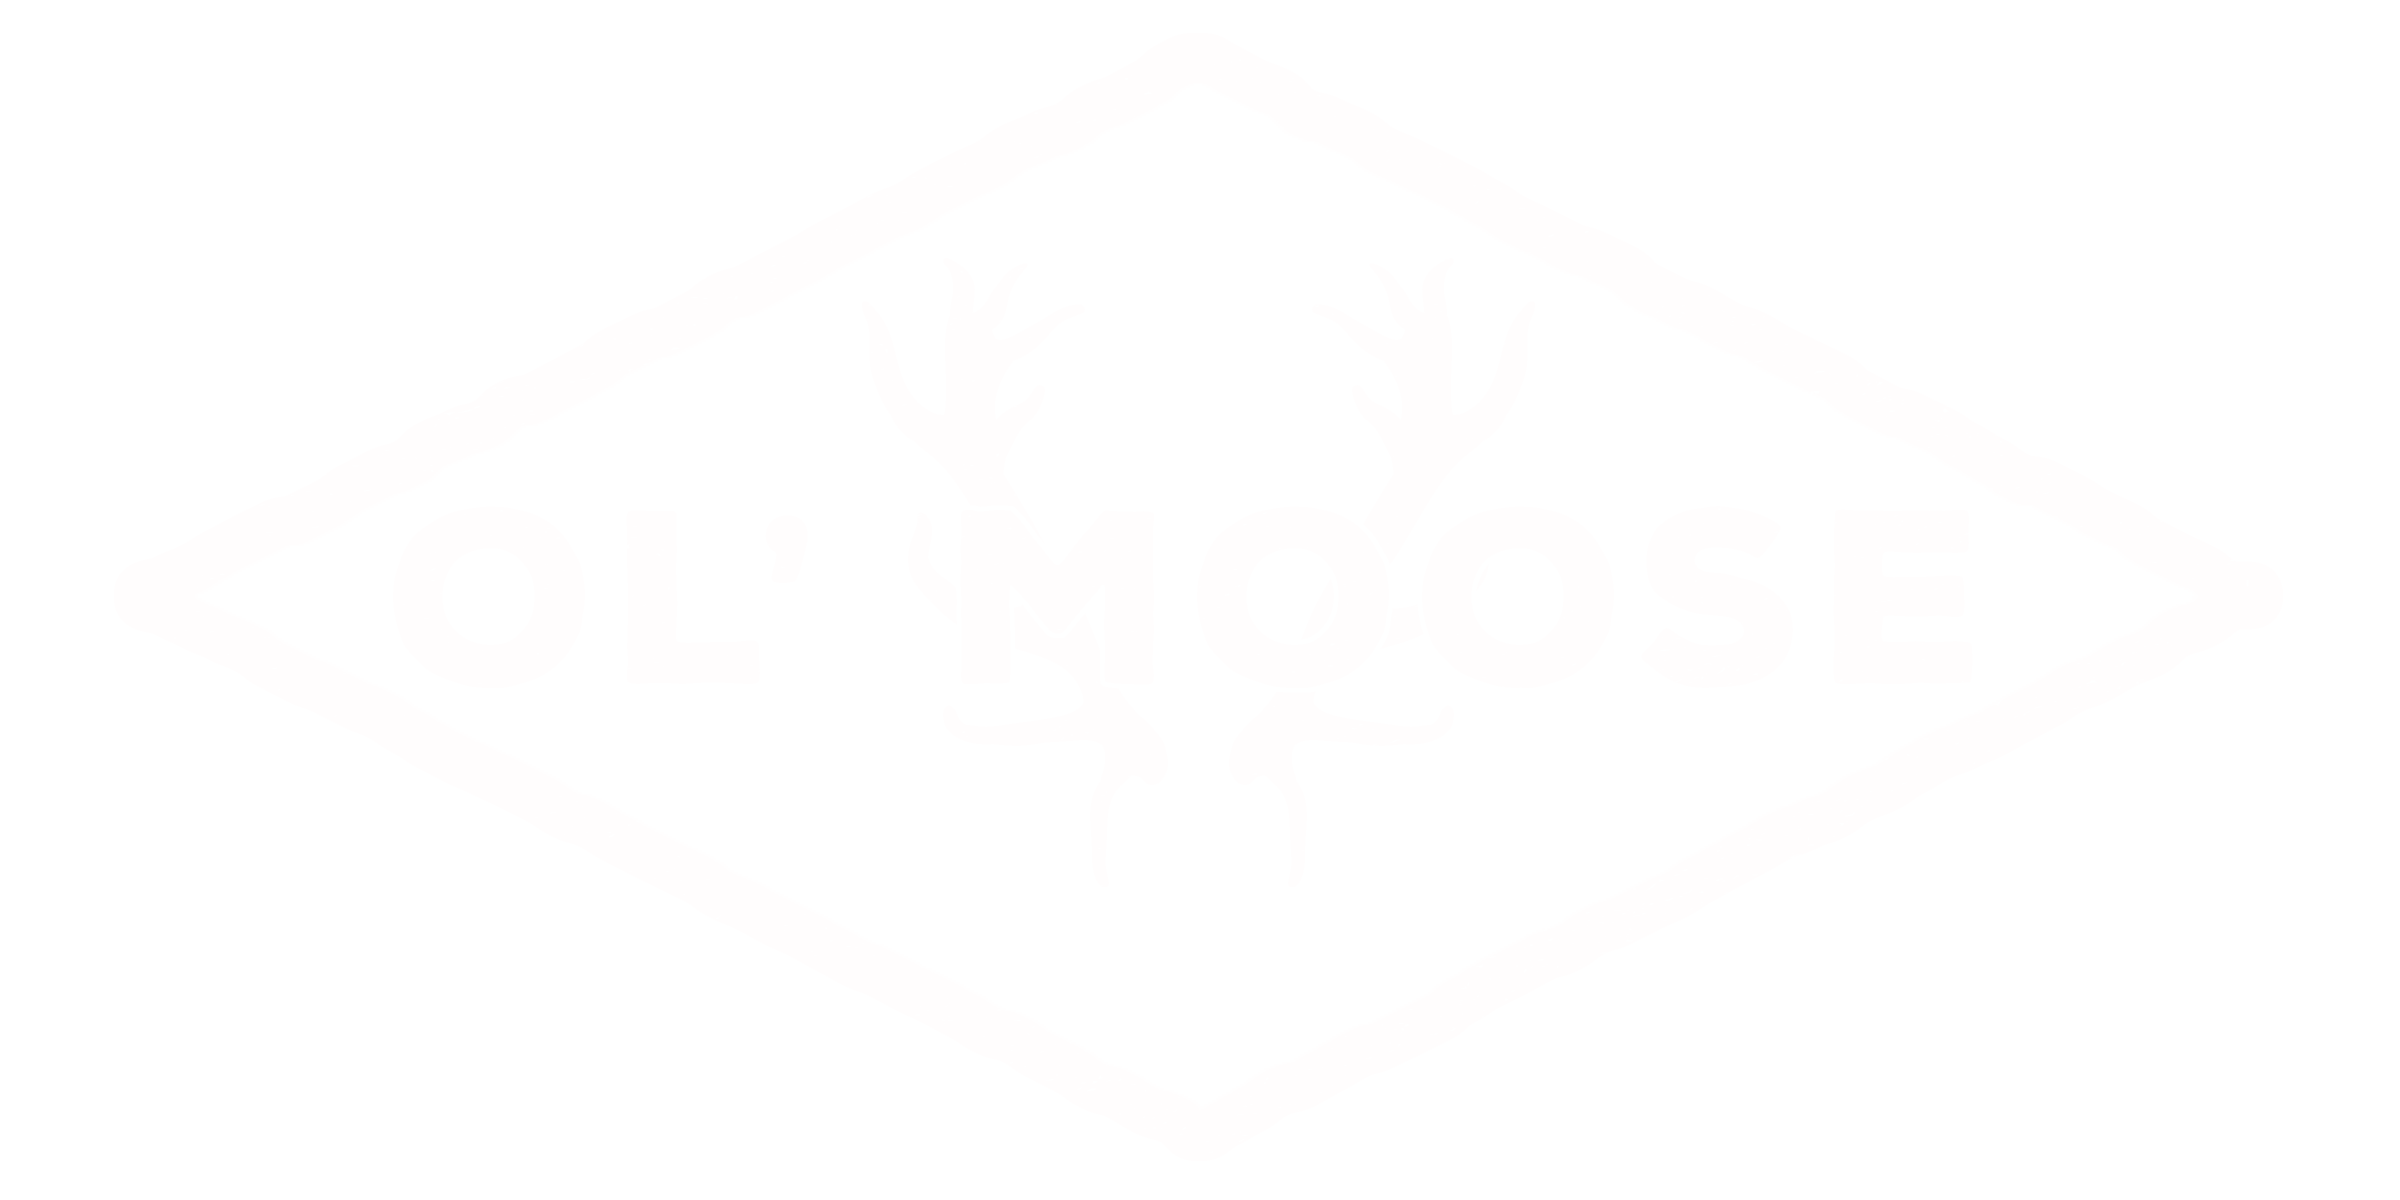 Ol' Moose